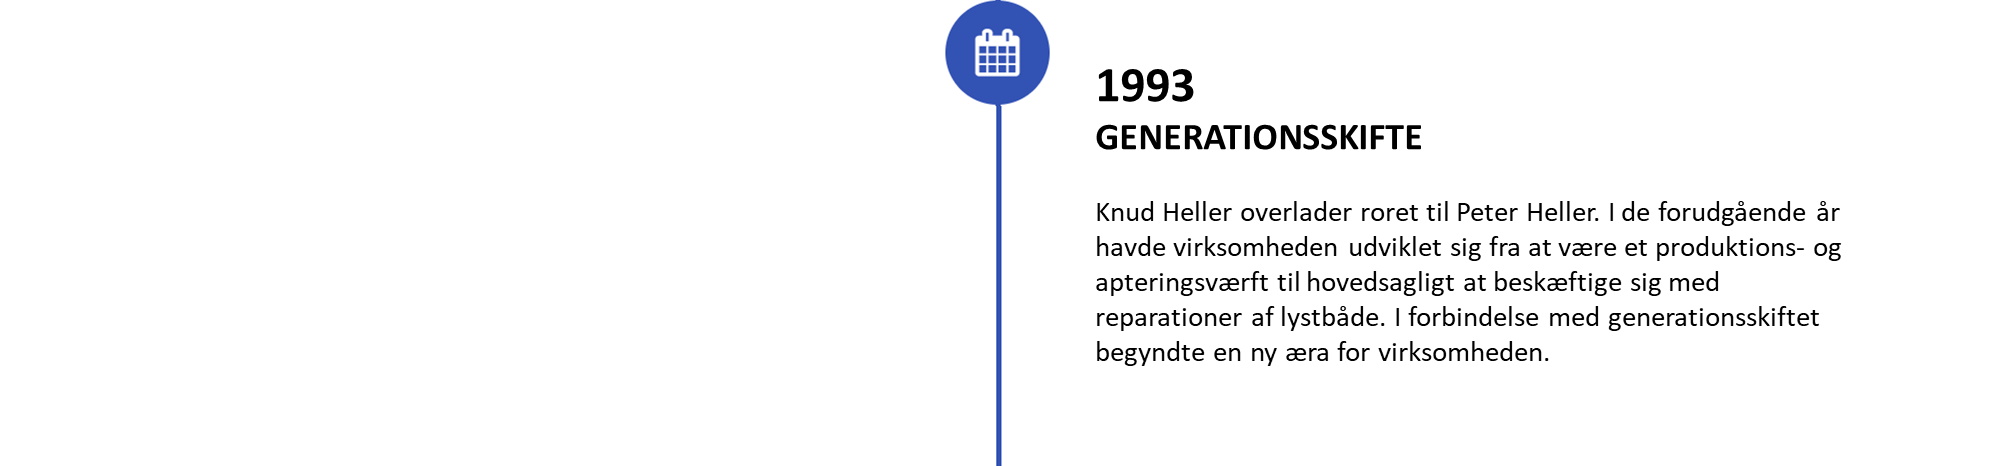 1993 Generationsskifte